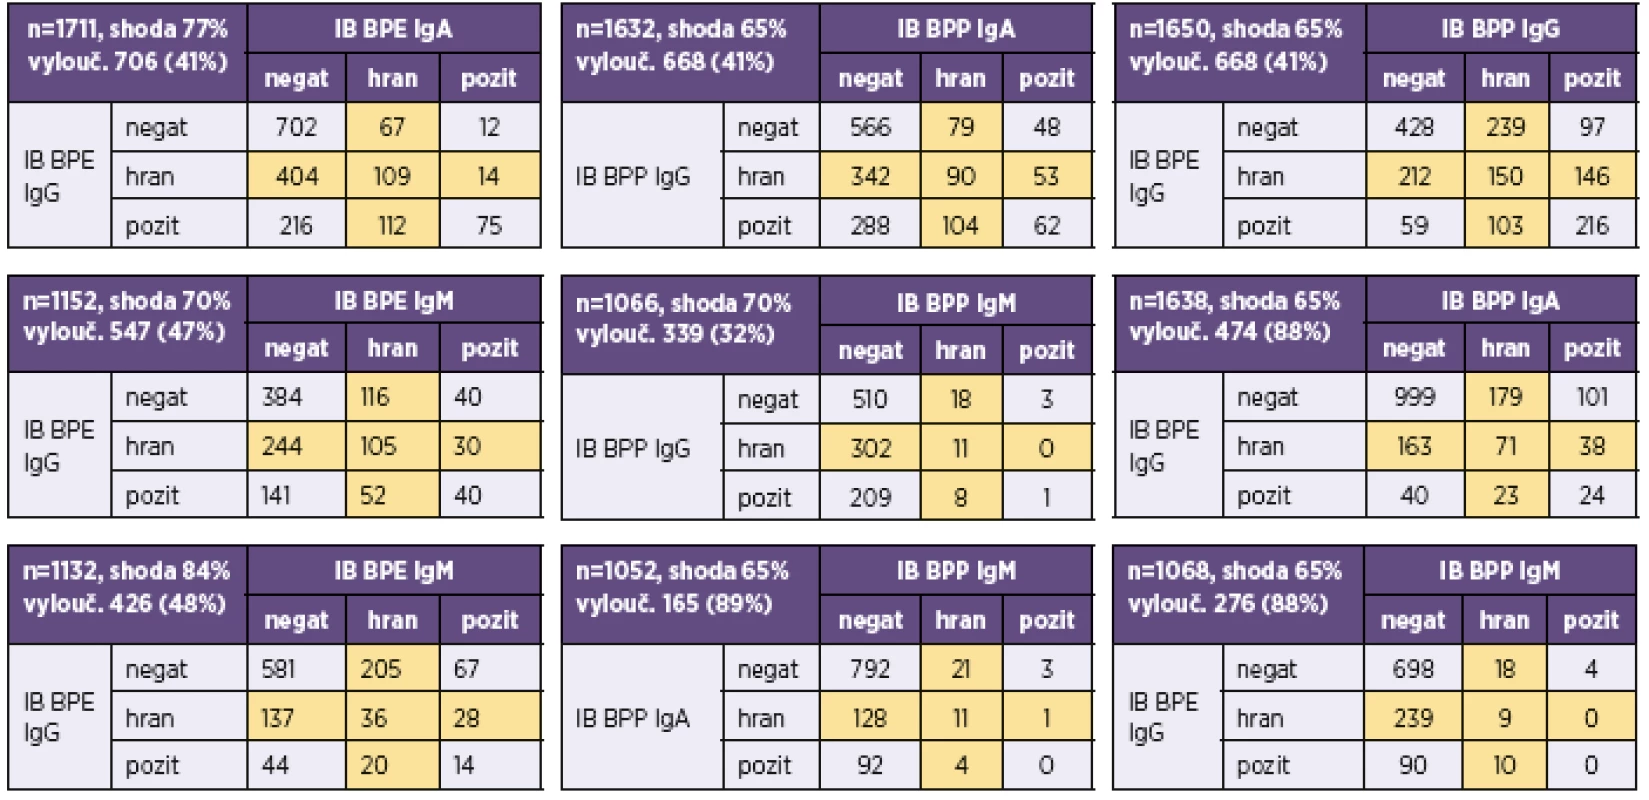 Přehled výsledků imunoblotové analýzy protilátek proti bordetelám
Table 5. Overview of results of the immunoblot assay for anti-<i>Bordetella</i> antibodies